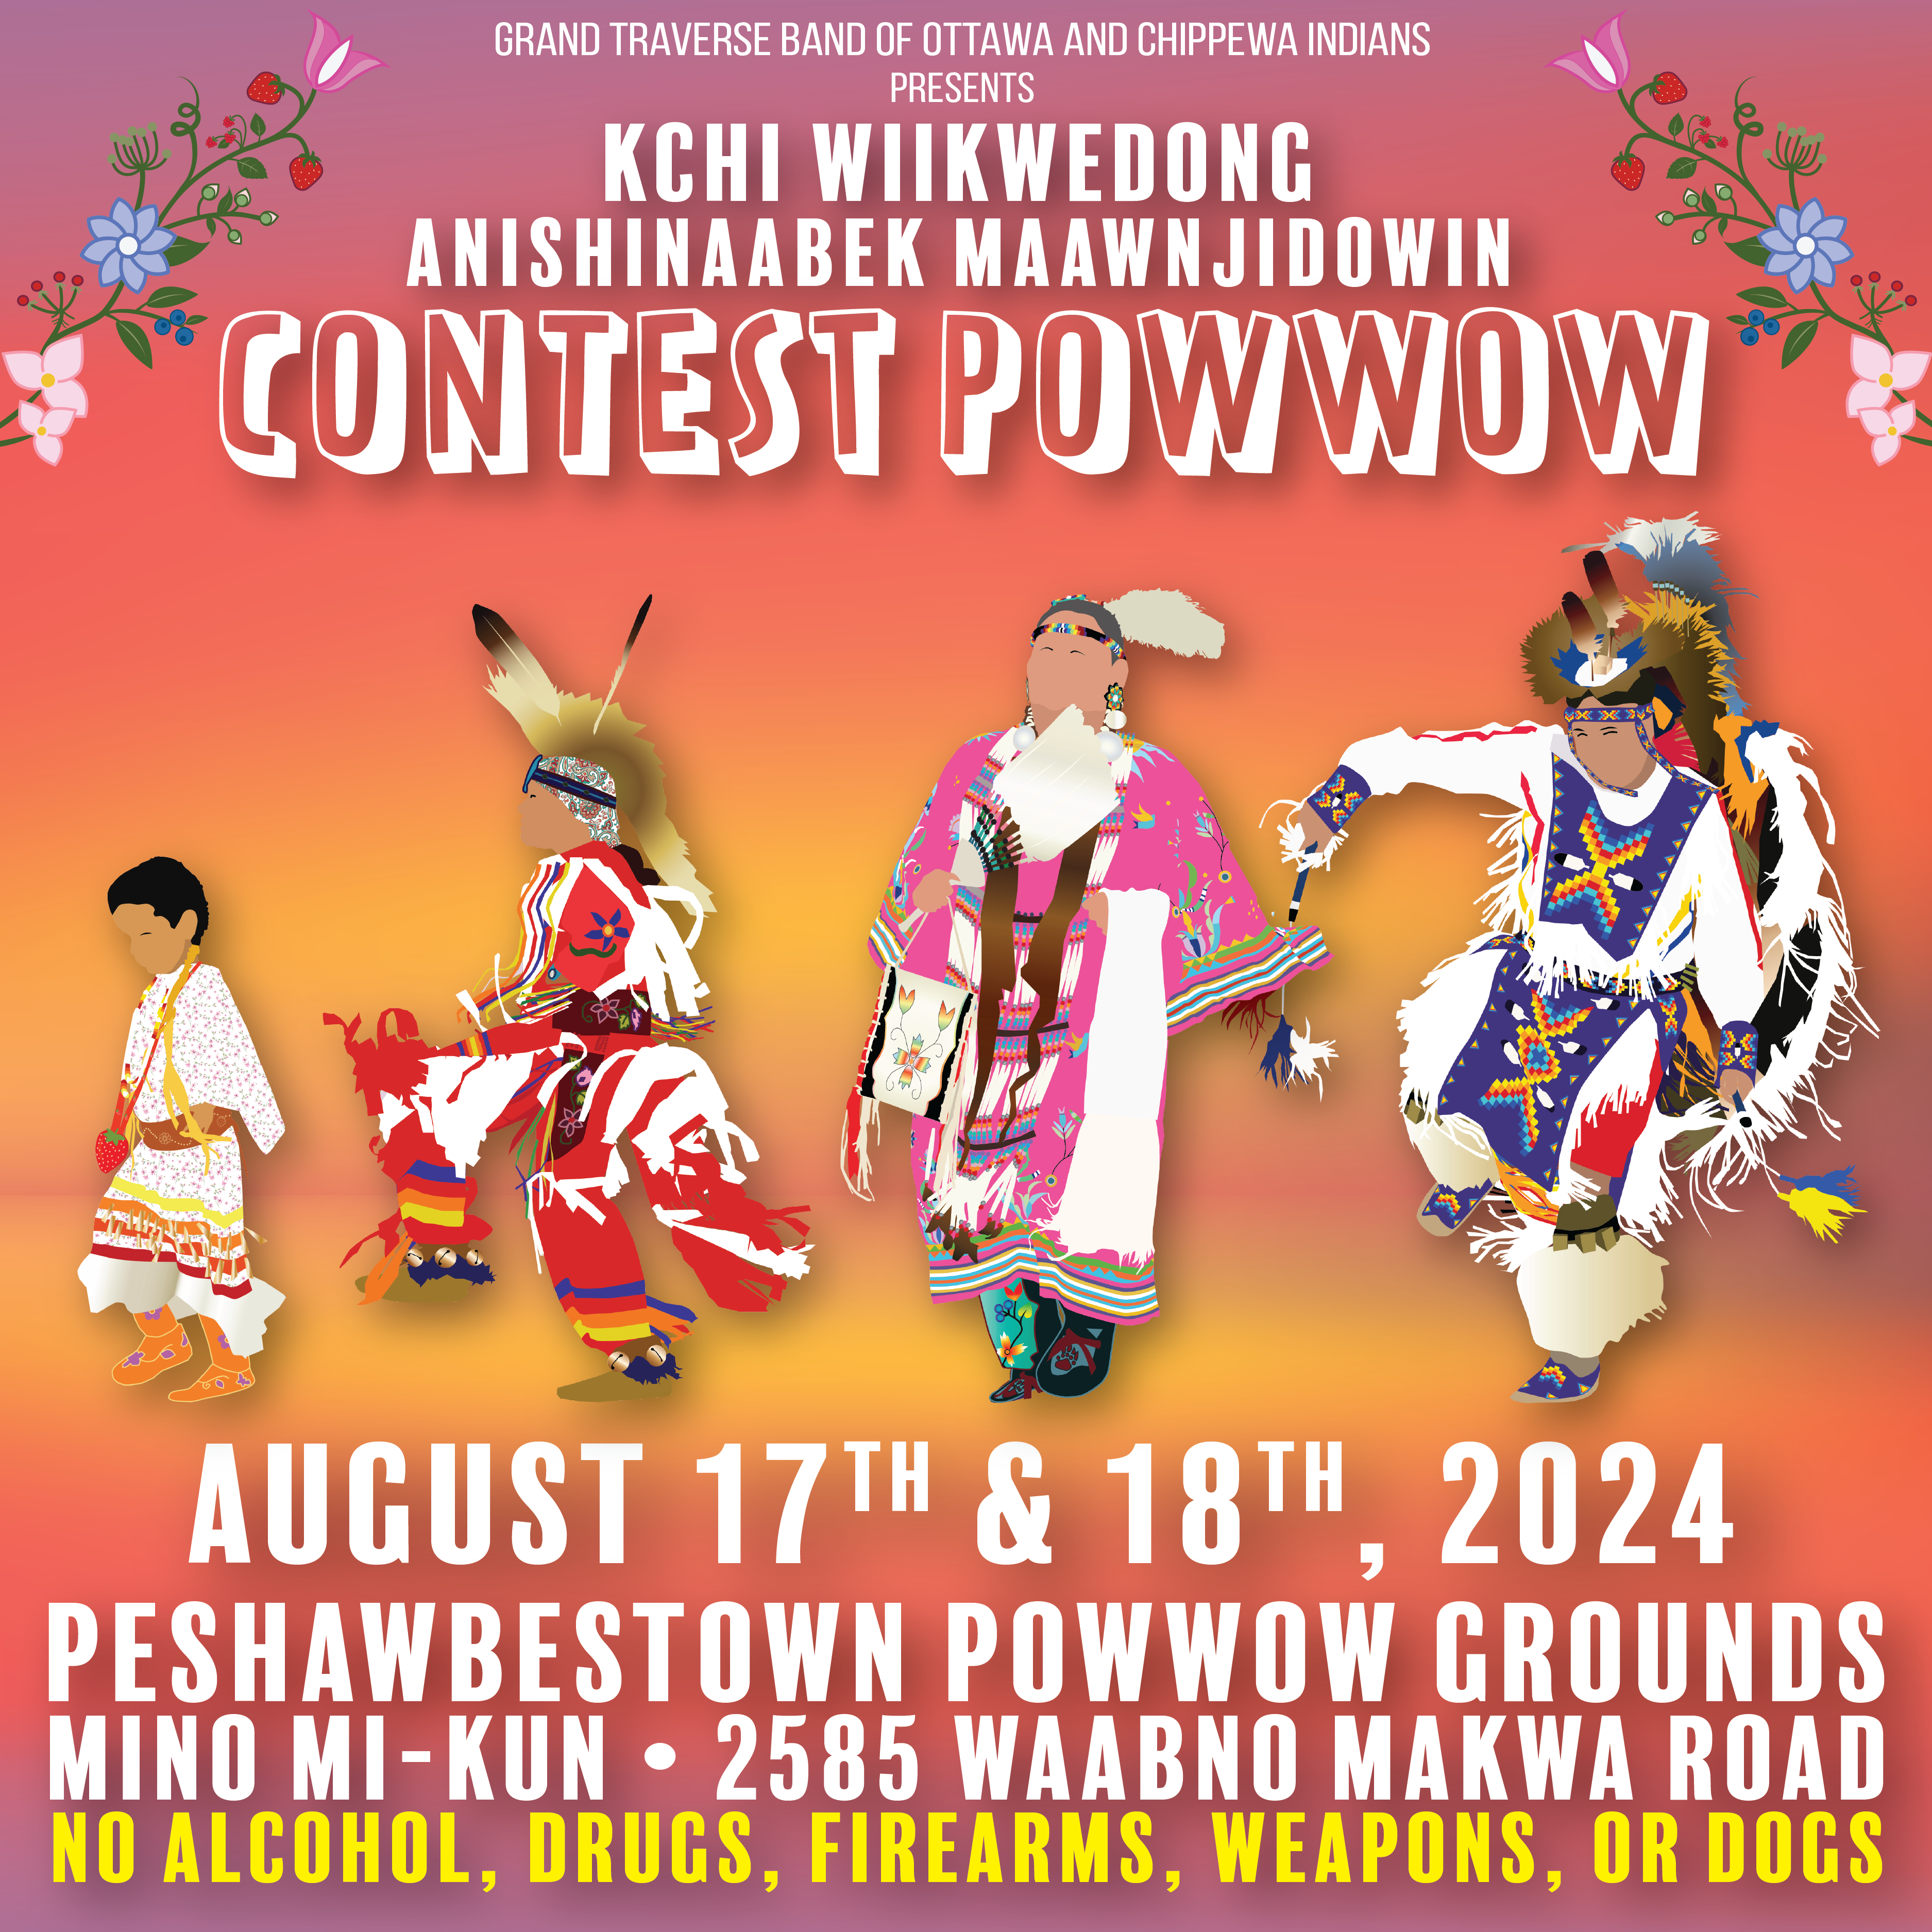 KCHI WIIKWEDONG ANISHINAABEK MAAWNJIDOWIN Contest PowWow